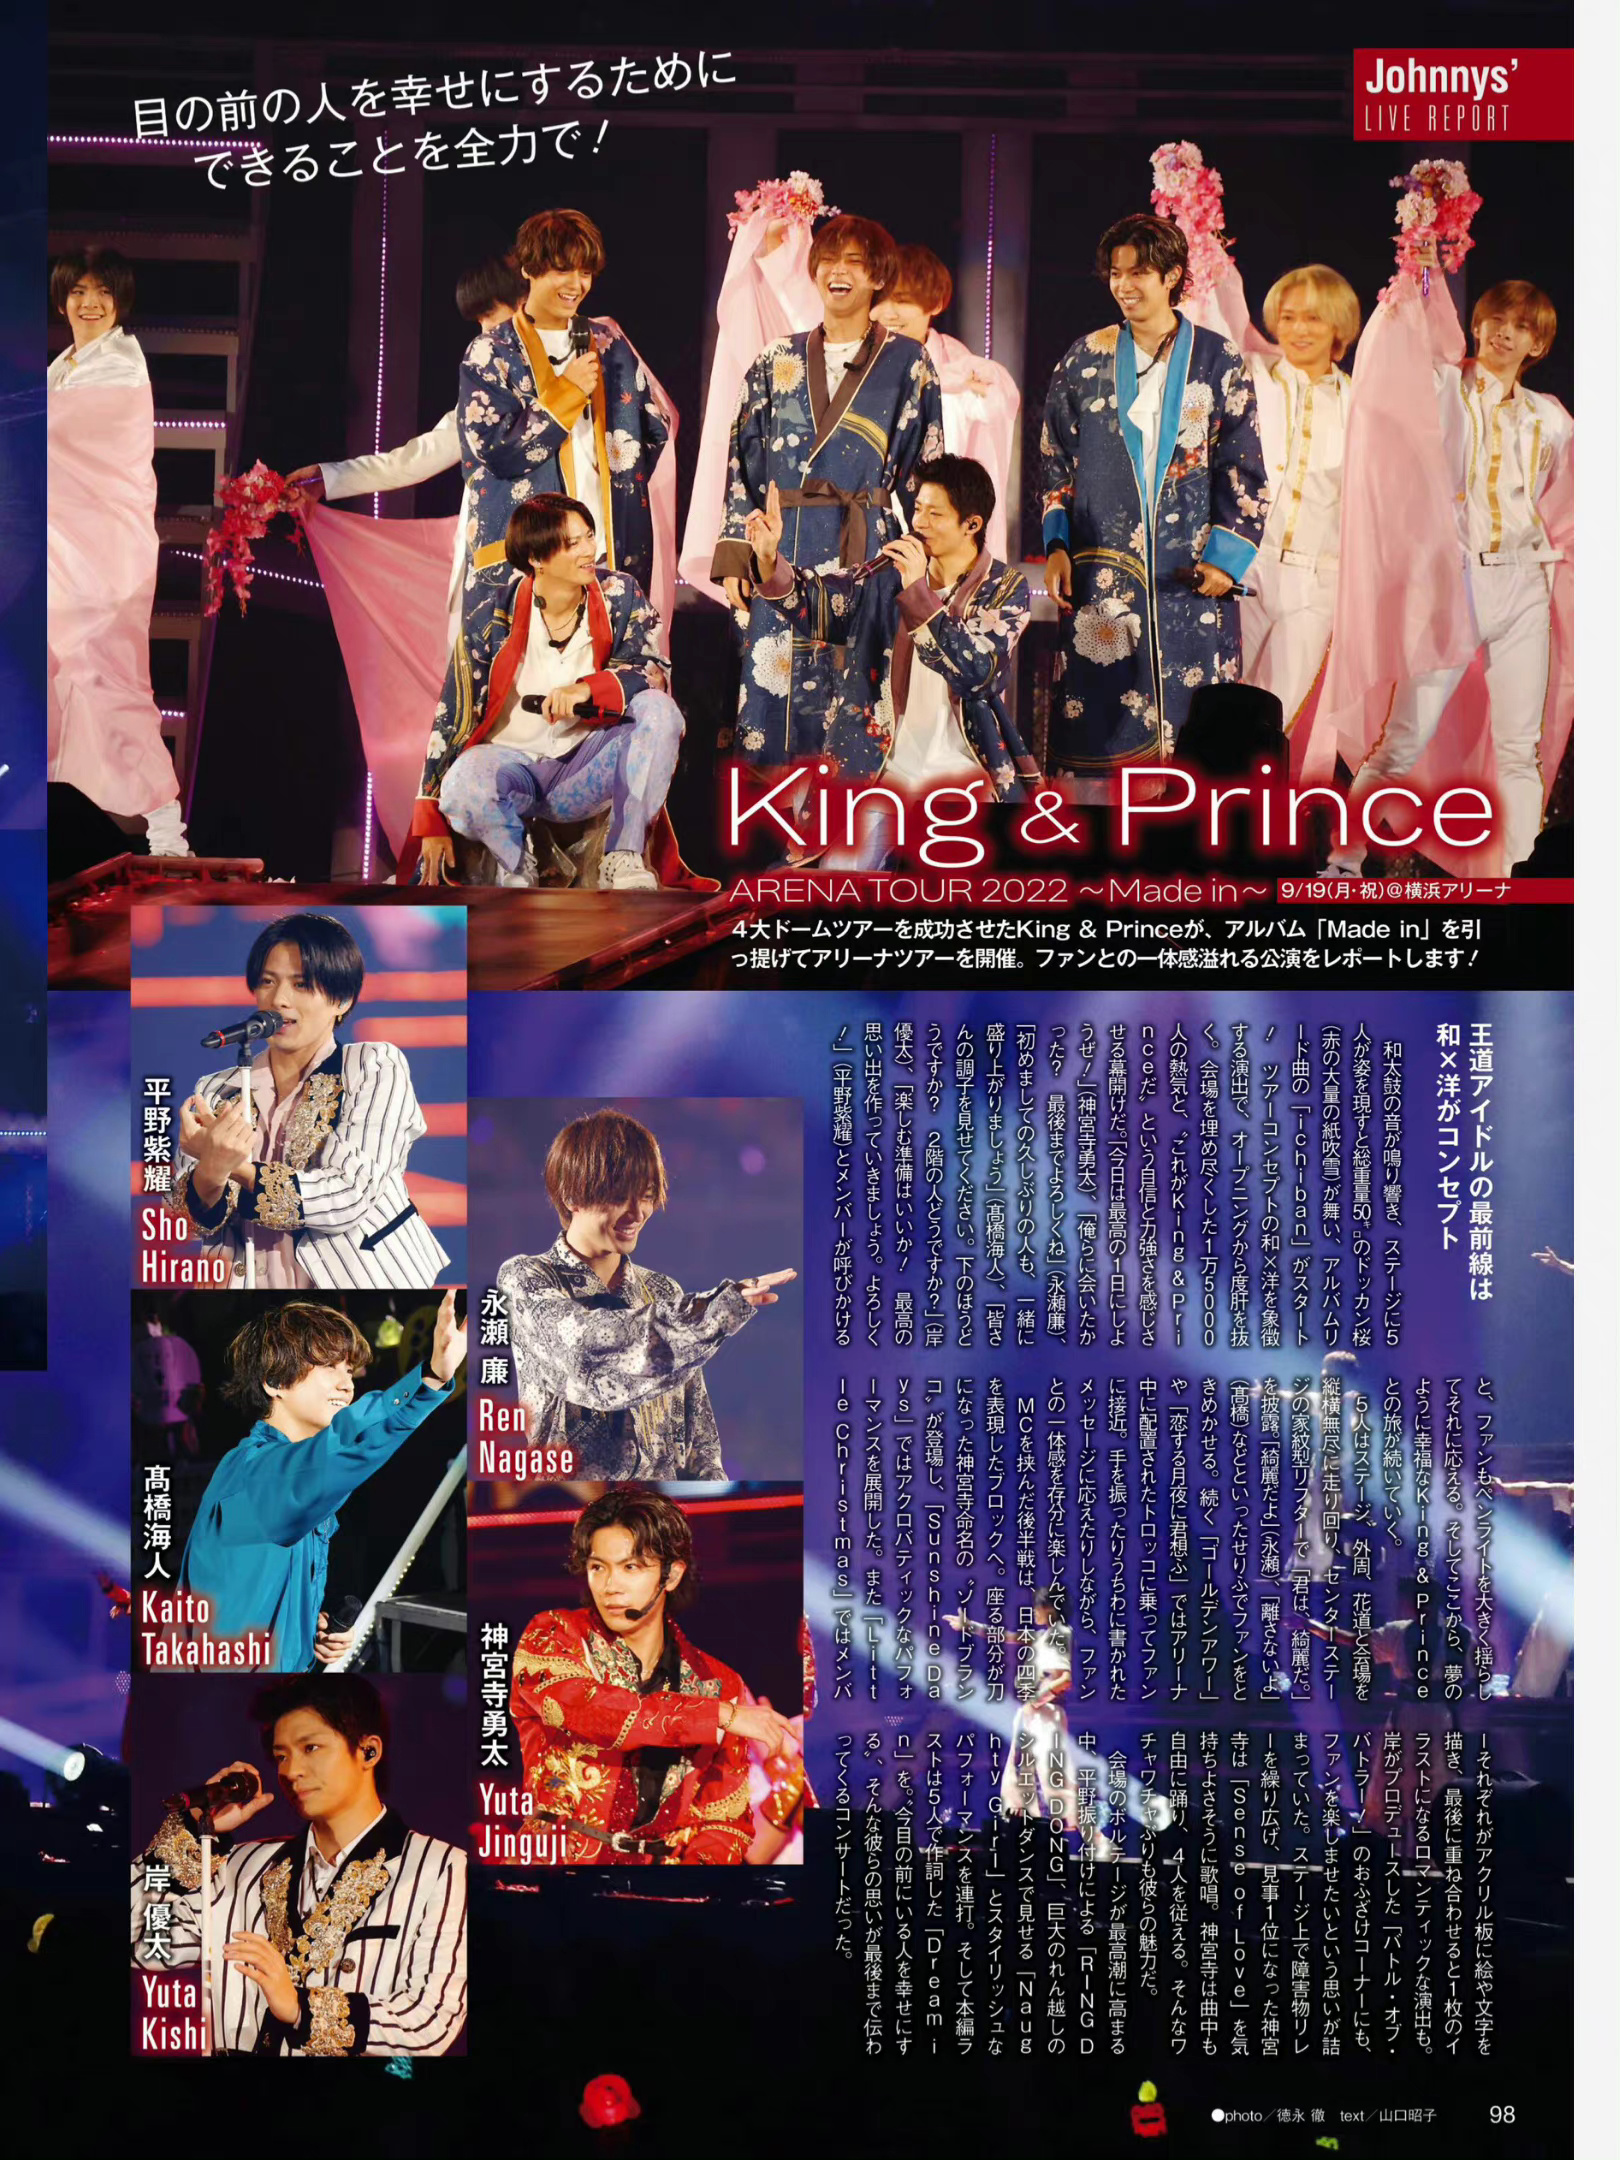 King&Prince TV LIFE 2022年10月14日号 - itotii